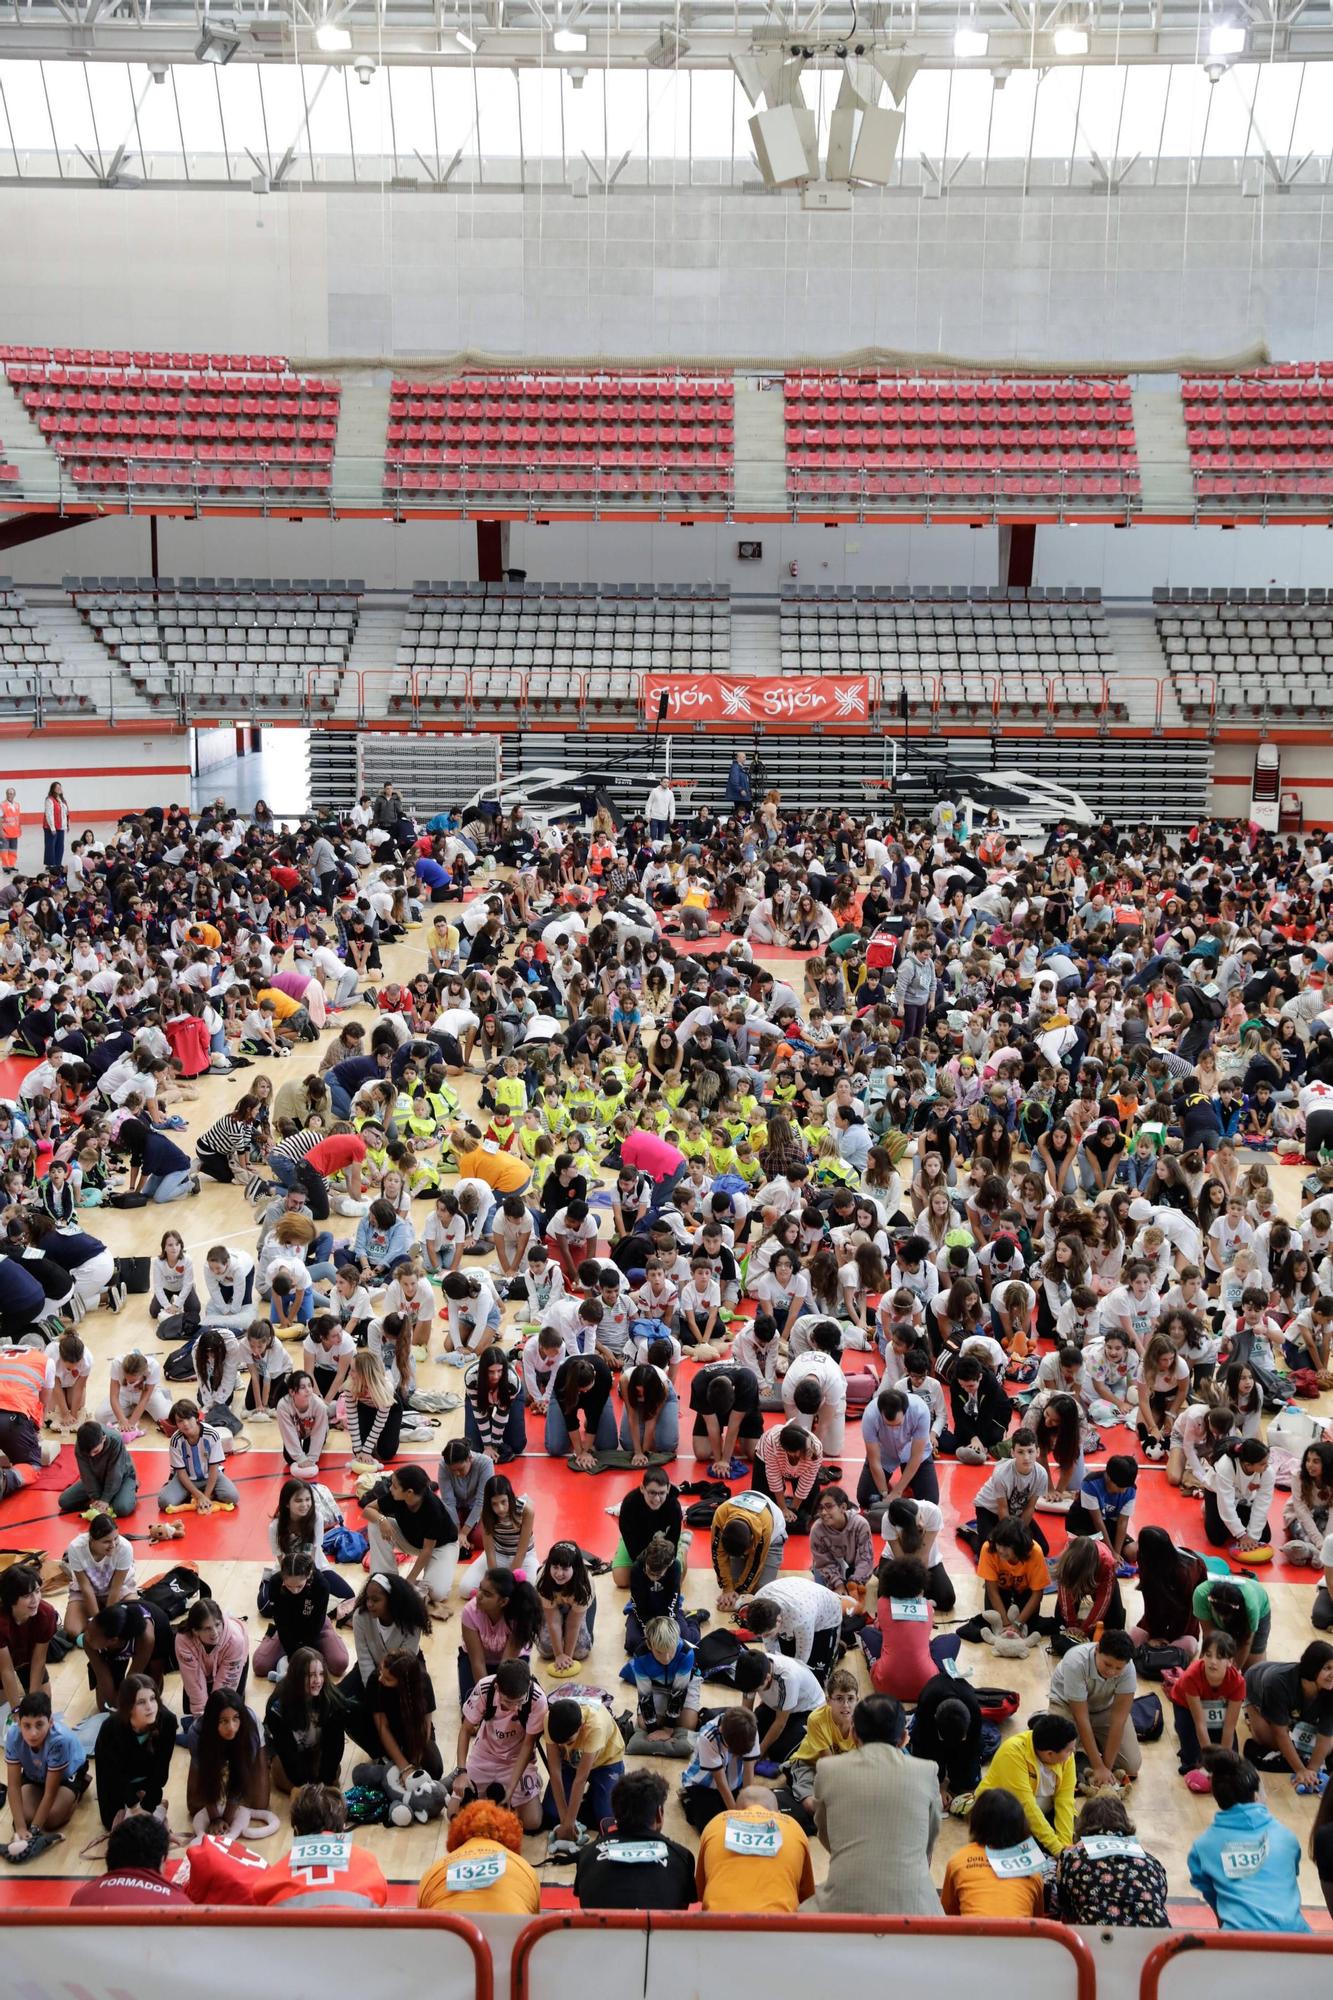 En imágenes: Escolares de Gijón baten el récord de de reanimación simultánea